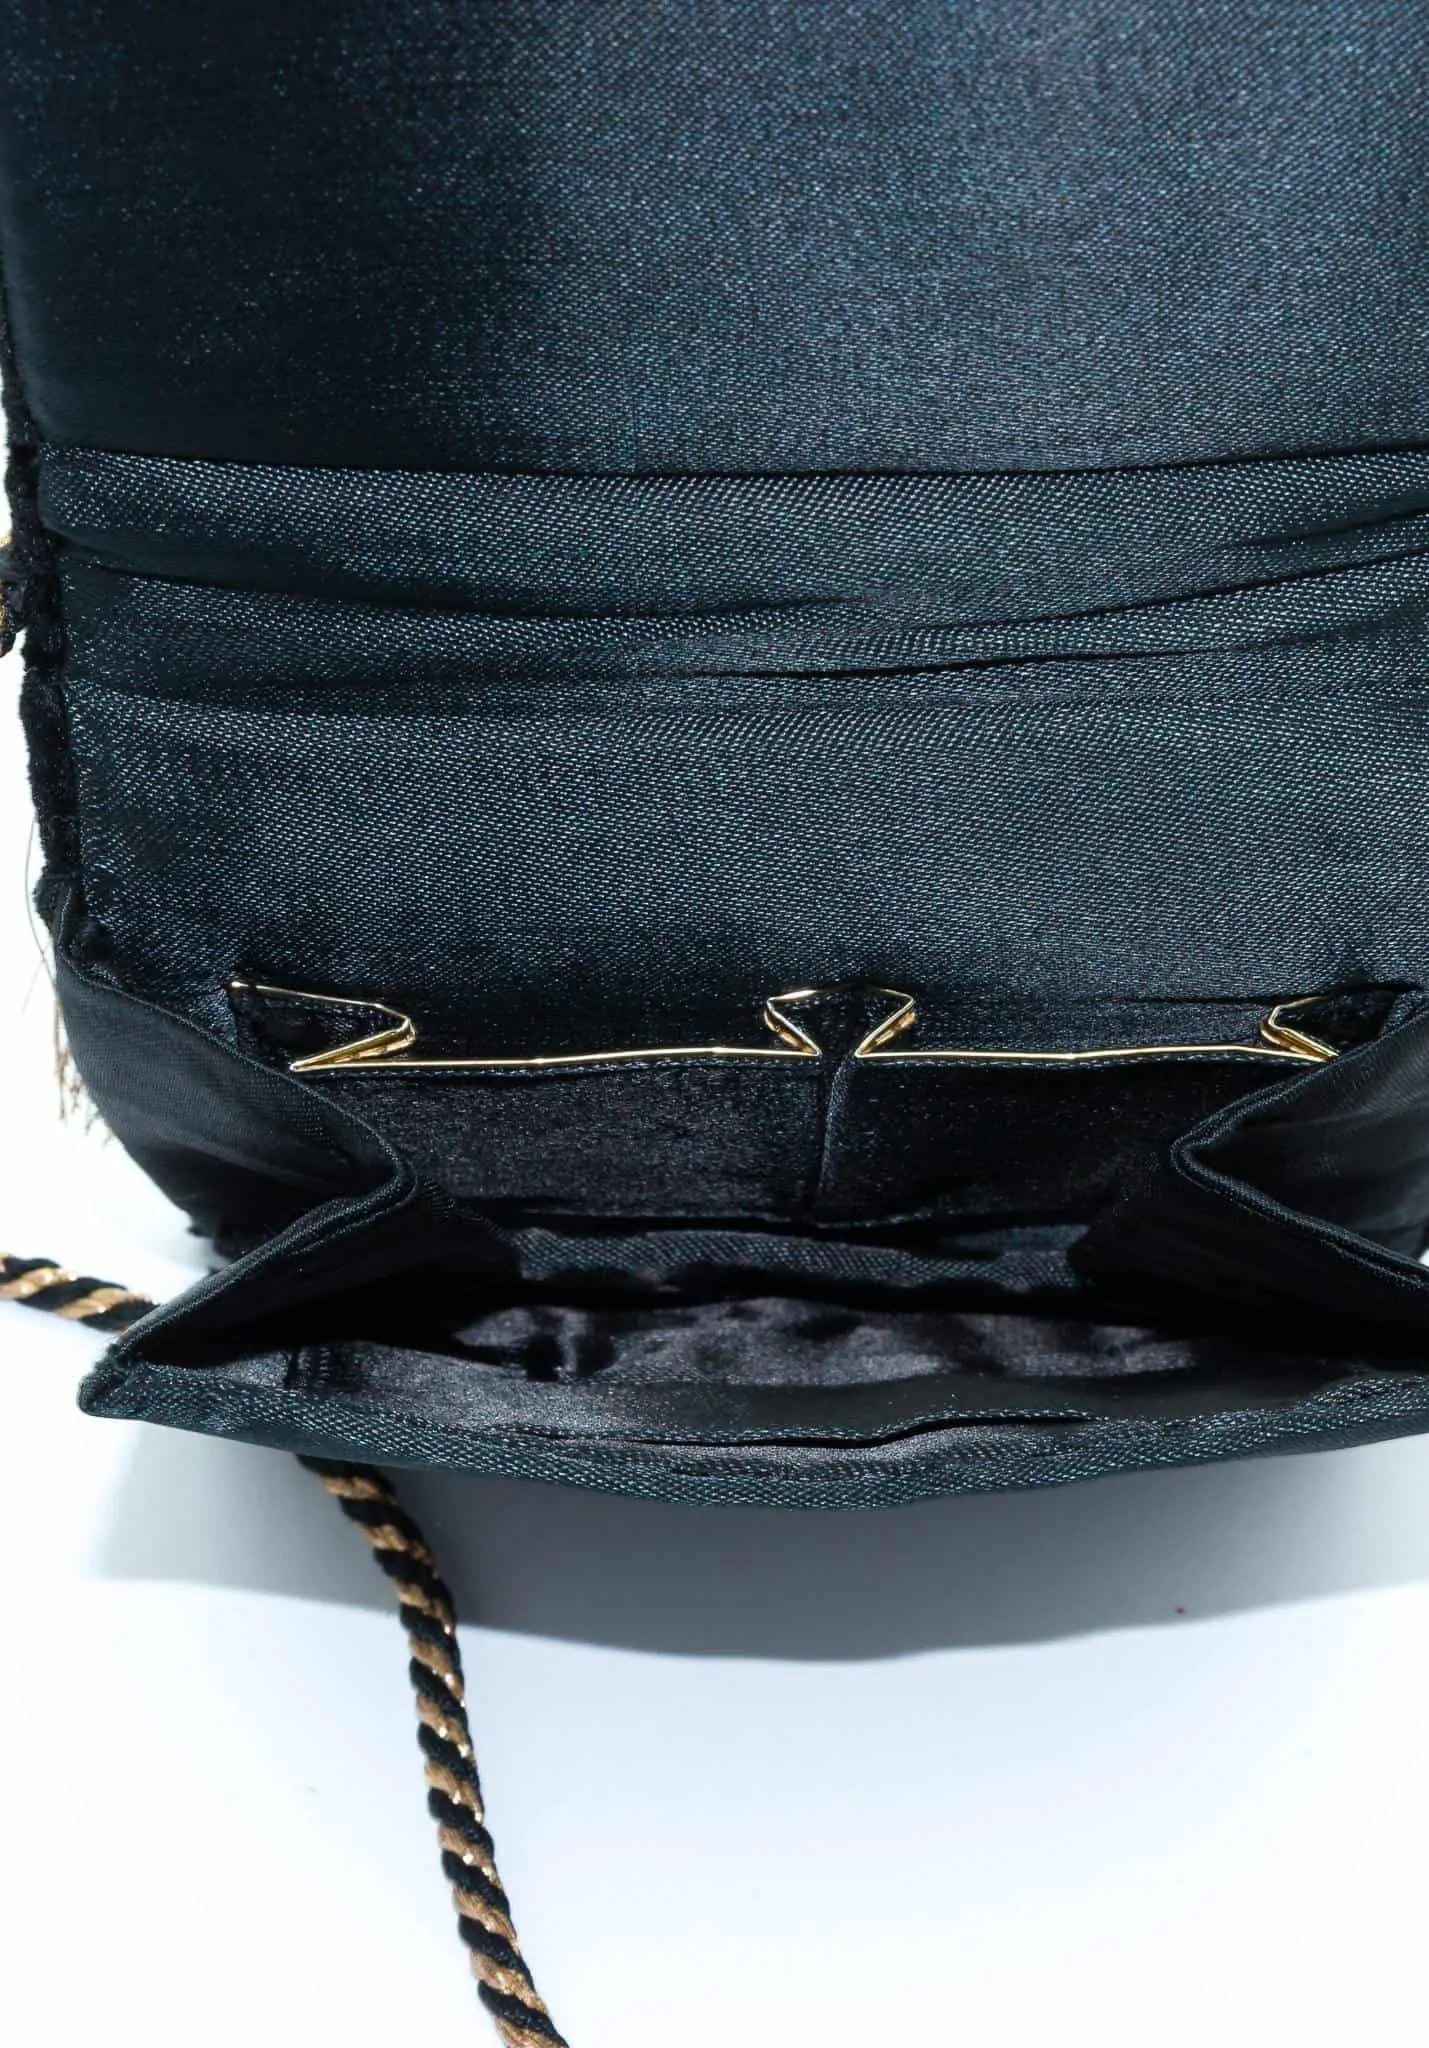 Sold at Auction: Vintage 1970s Louis Vuitton Shoulder Bag